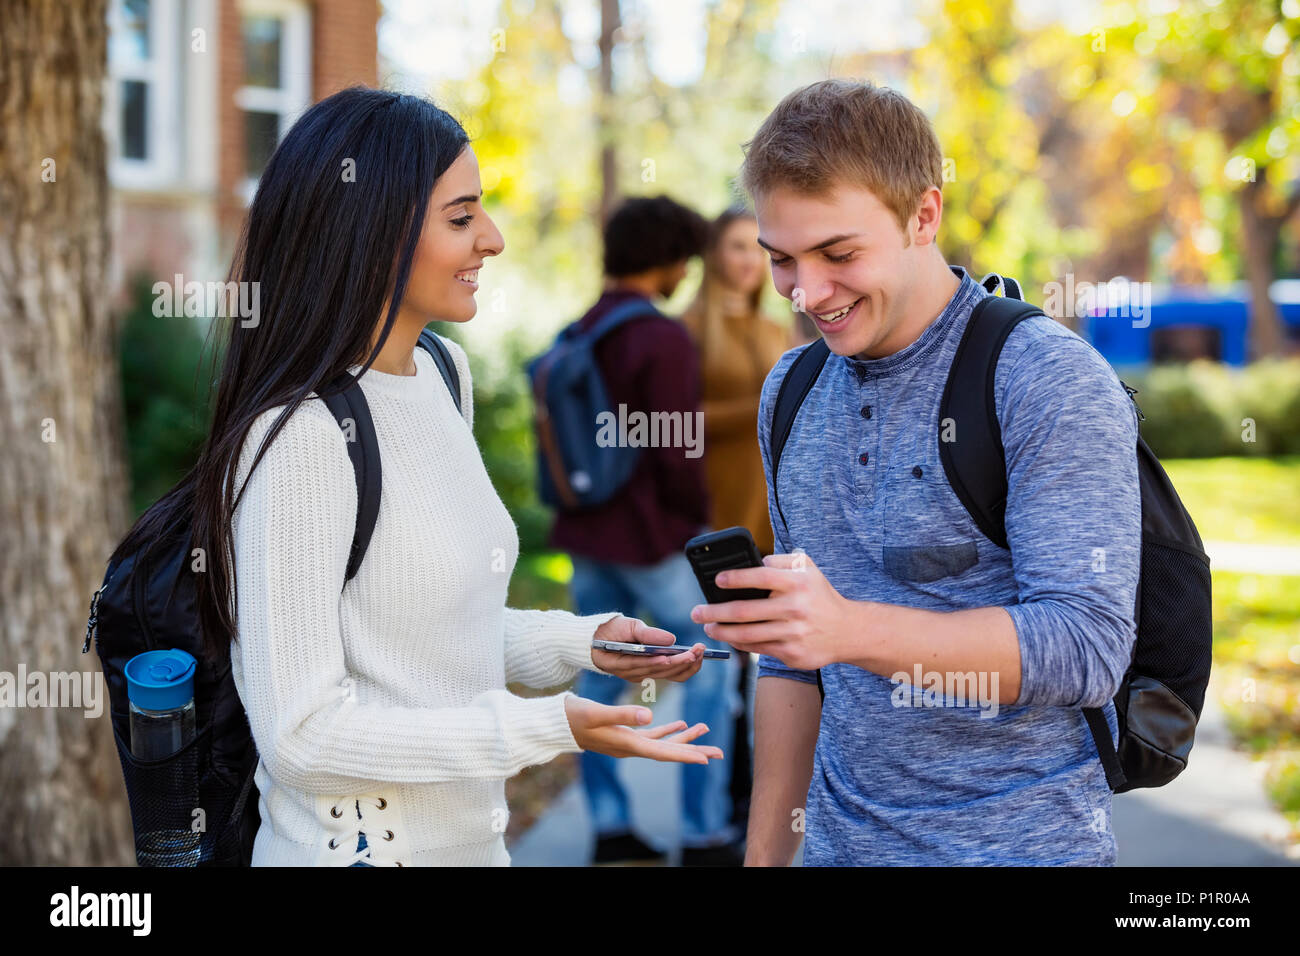 Un étudiant d'université mâle et femelle se trouve sur un chemin regardant un smartphone ensemble, riant et parlant avec un petit groupe de confrères ... Banque D'Images